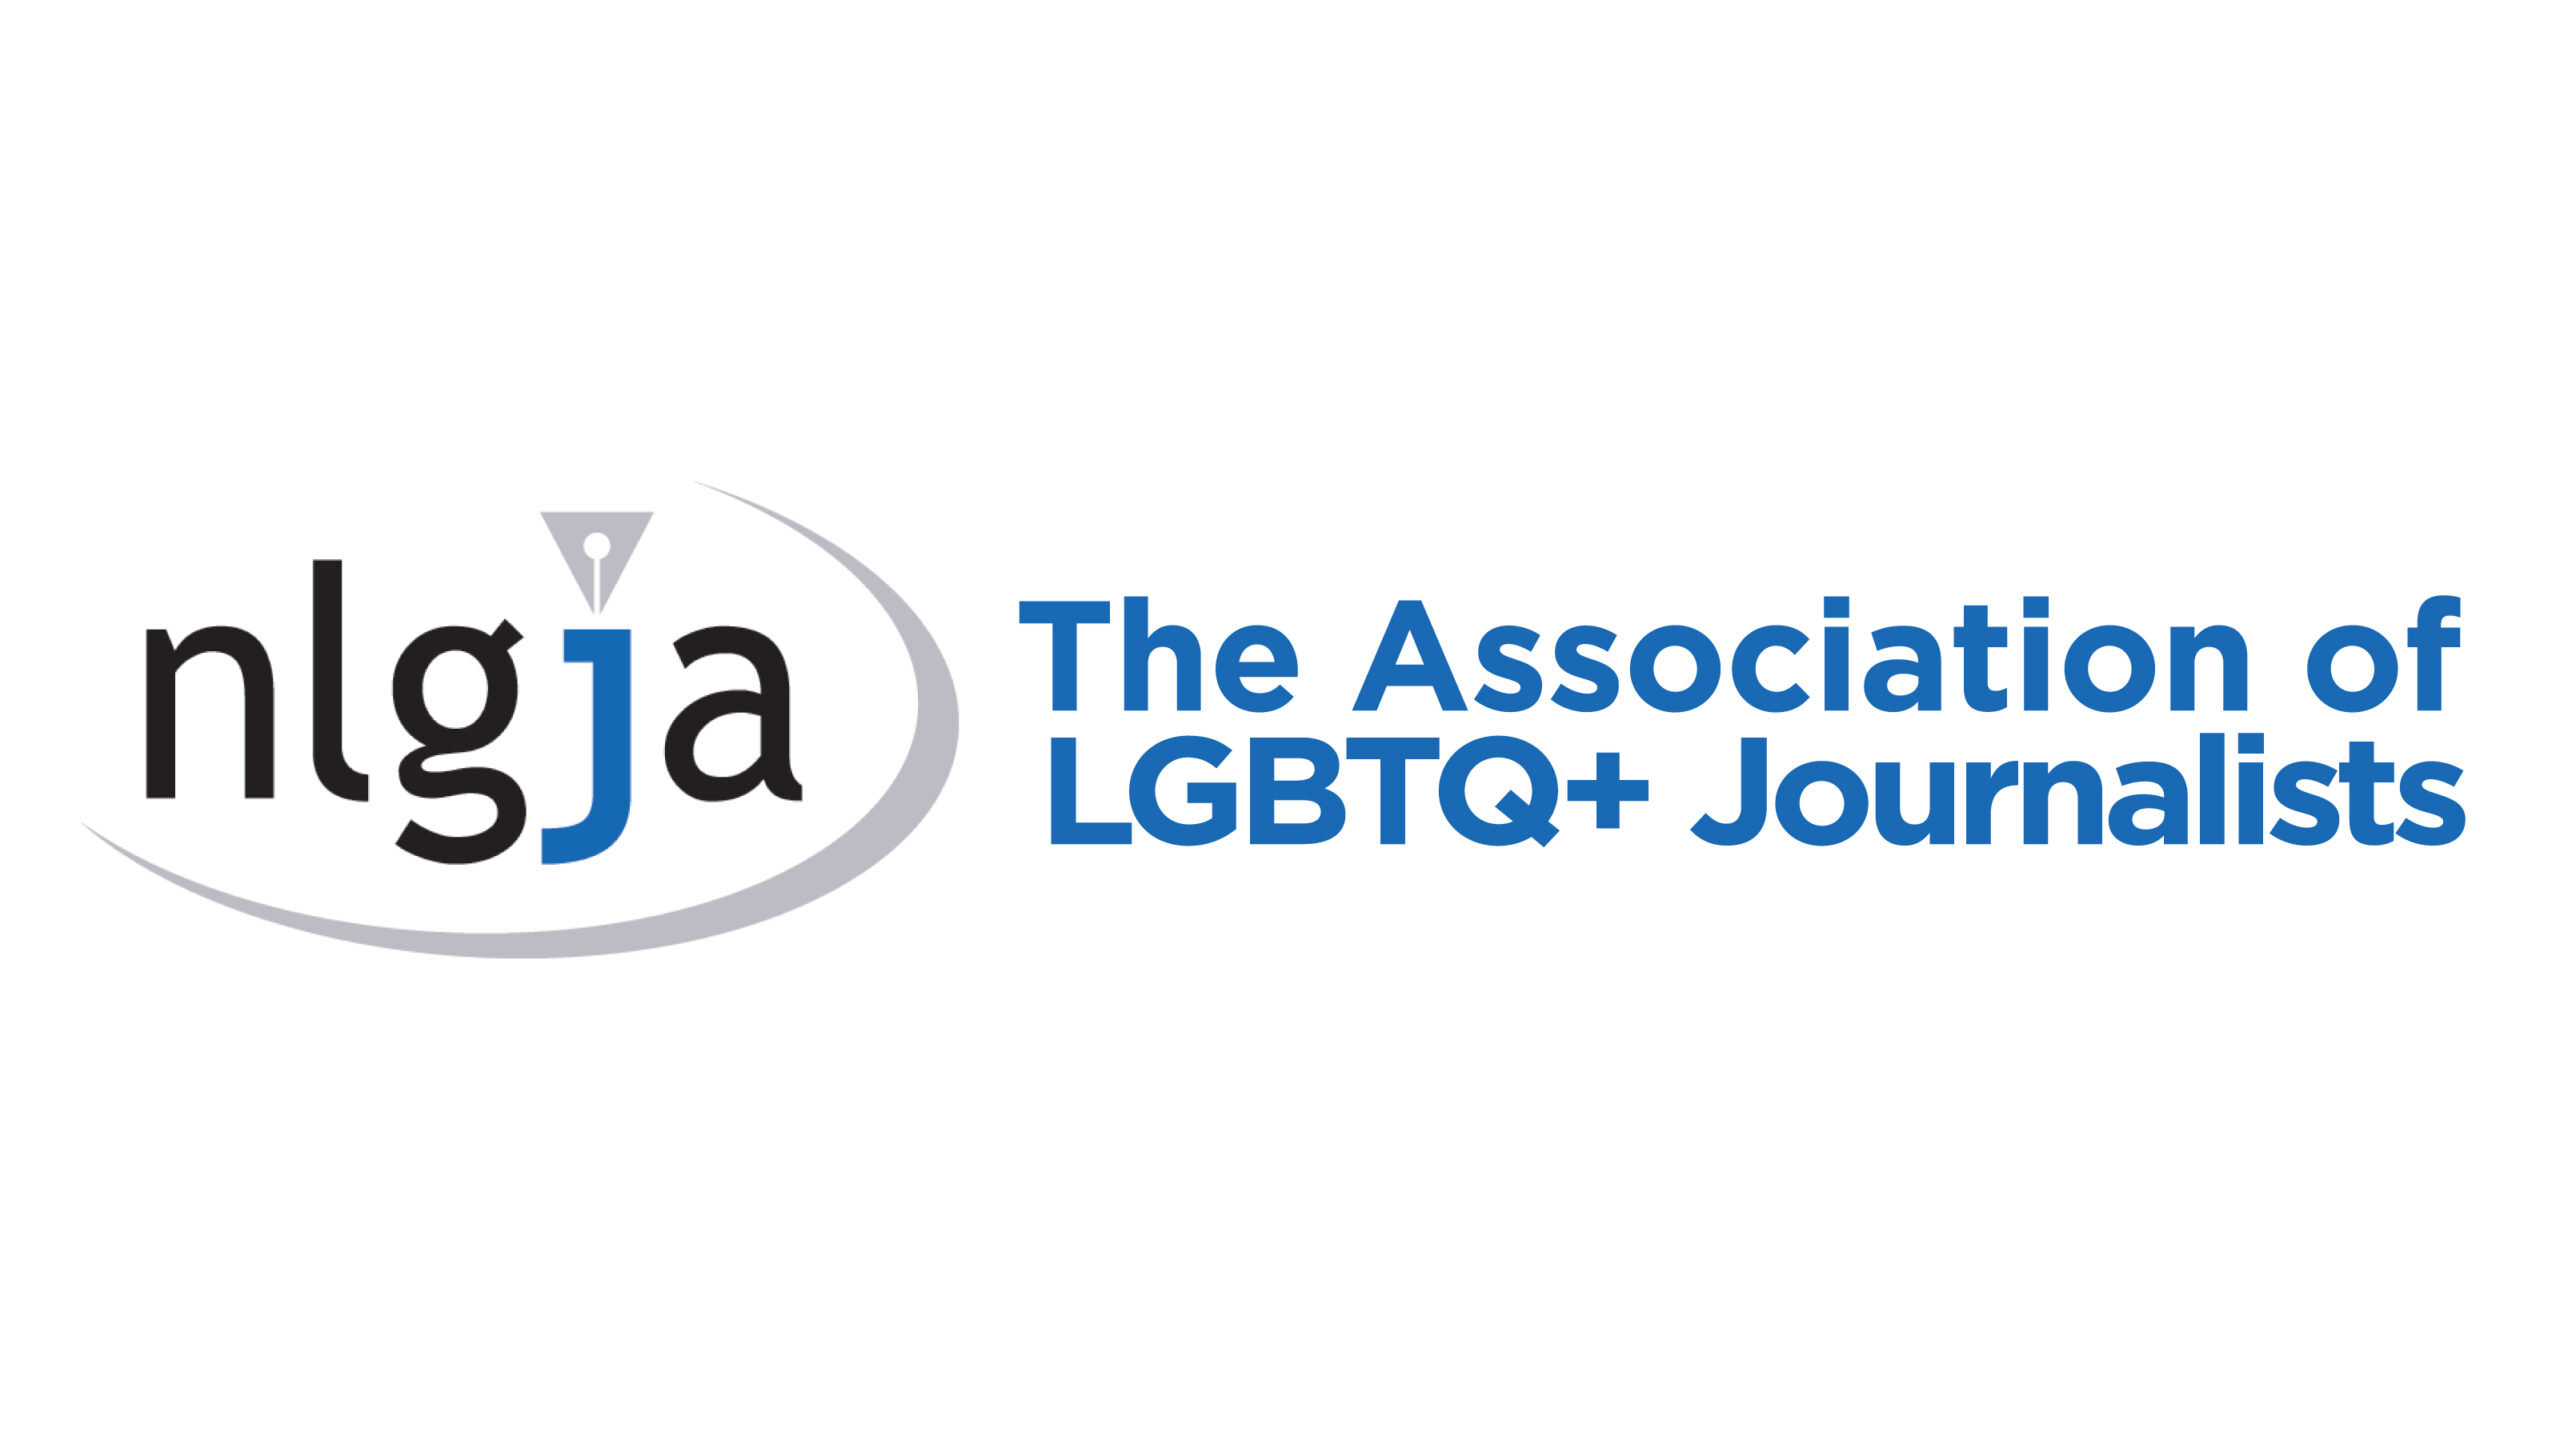 NLGJA: The Association of LGBTQ+ Journalists